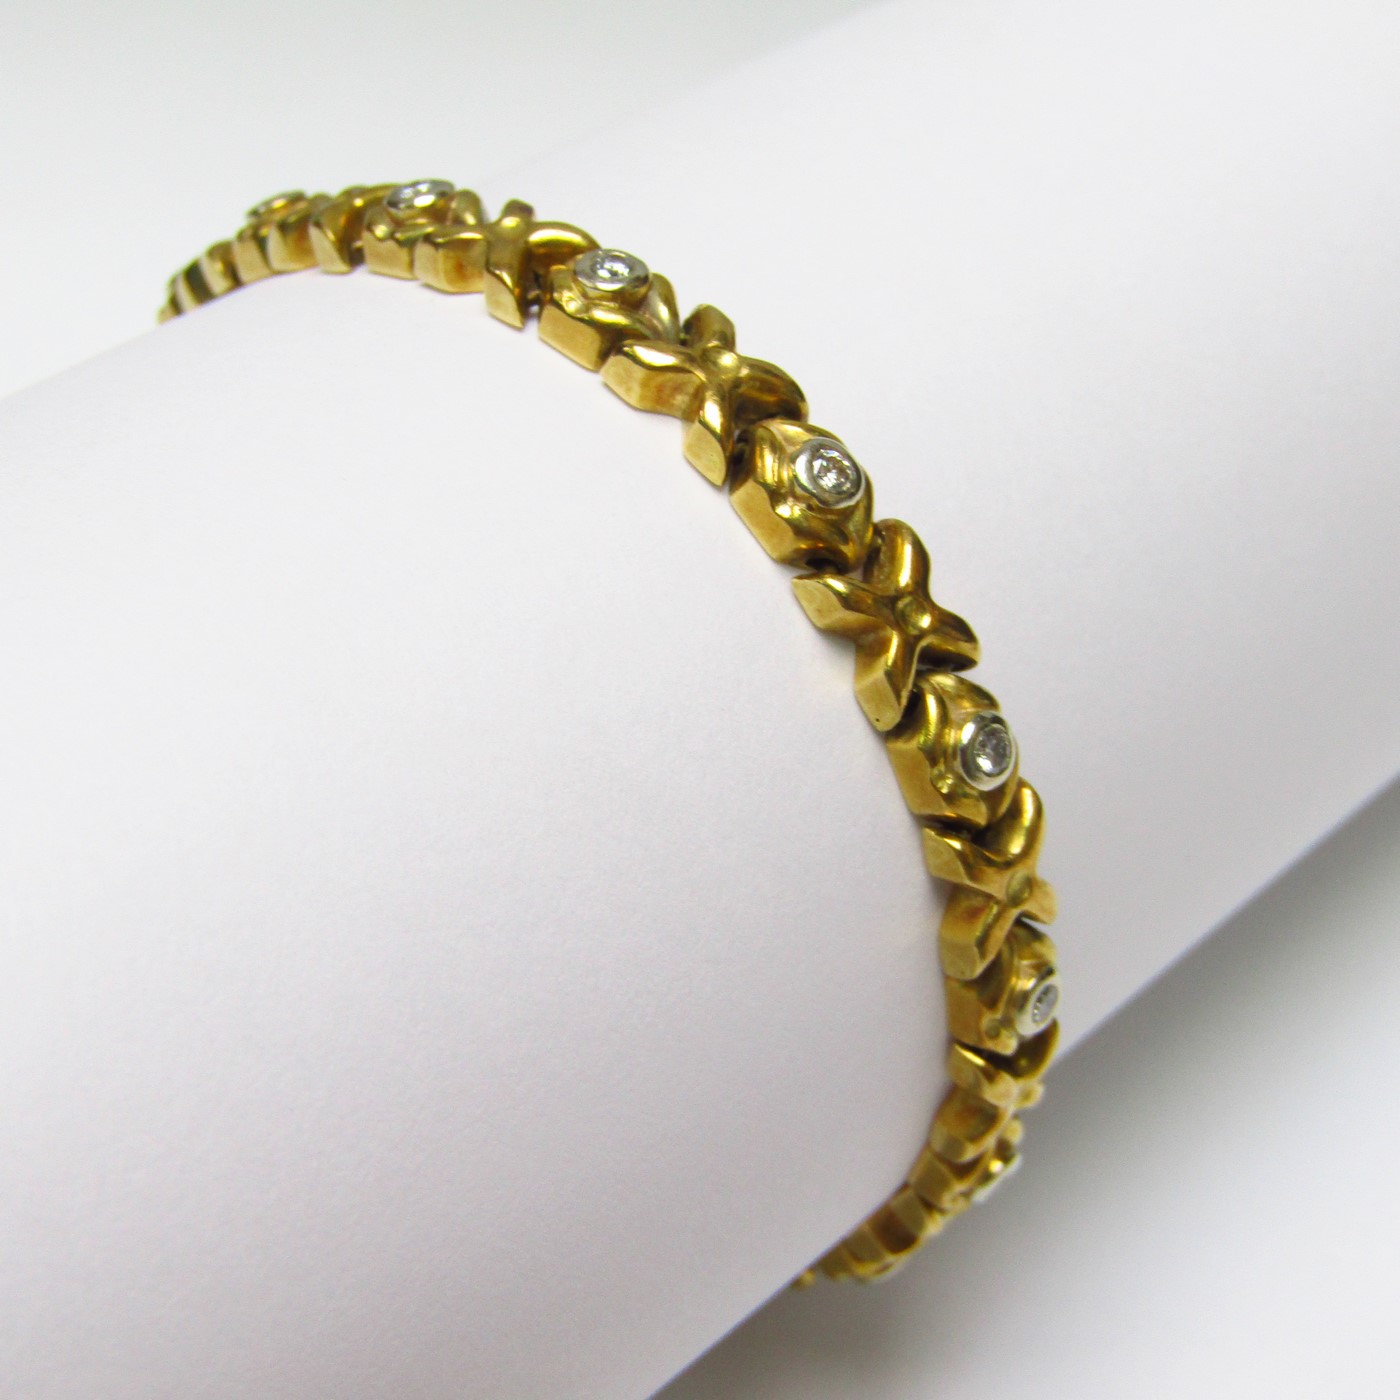 Buy 916 Gold Men Bracelets Mb-20 Online | P S Jewellery - JewelFlix